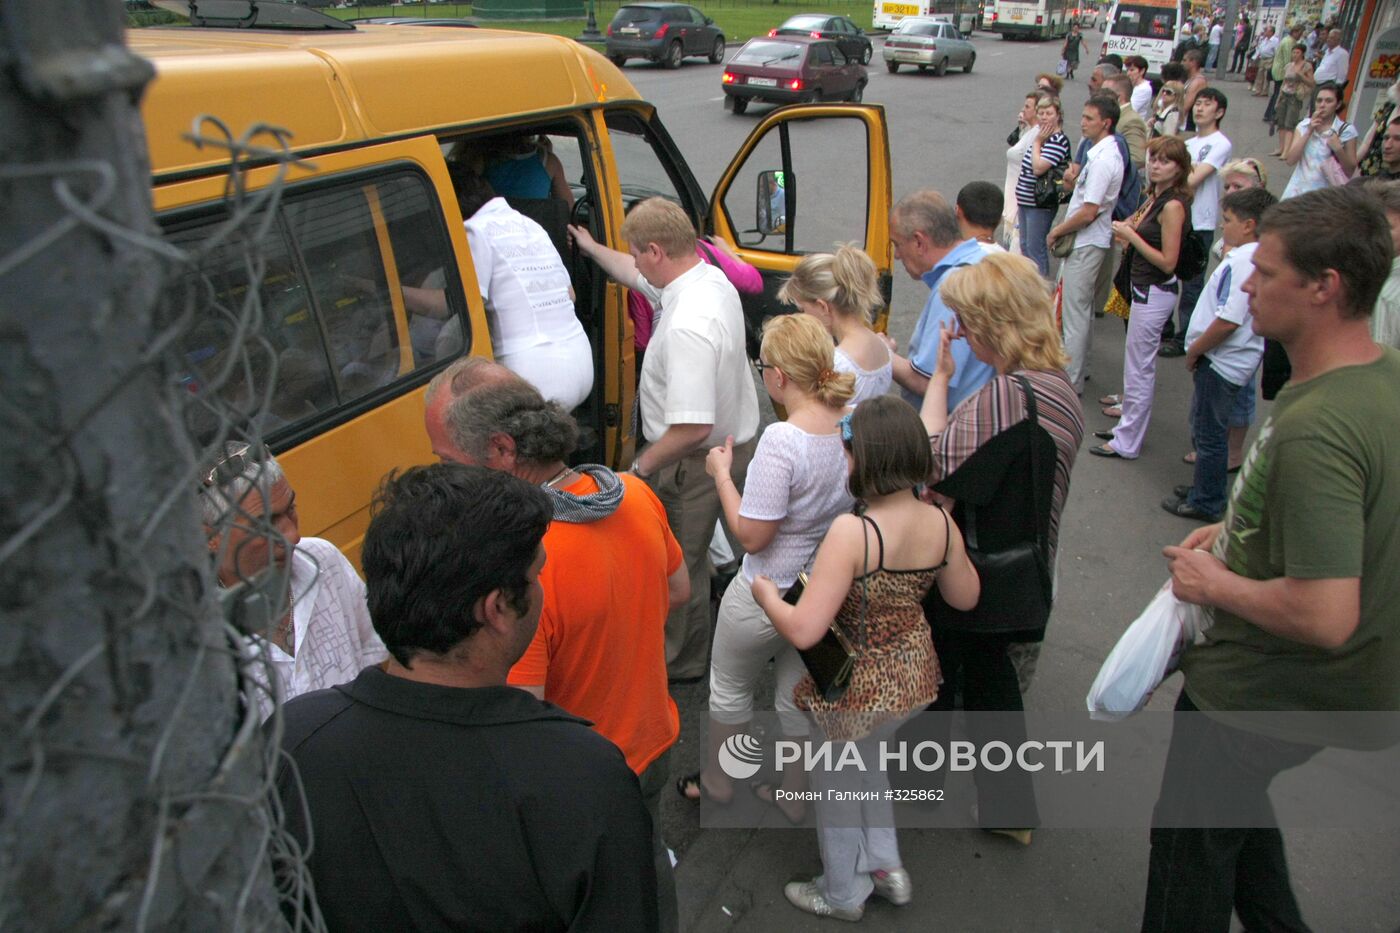 Общественный транспорт в Москве